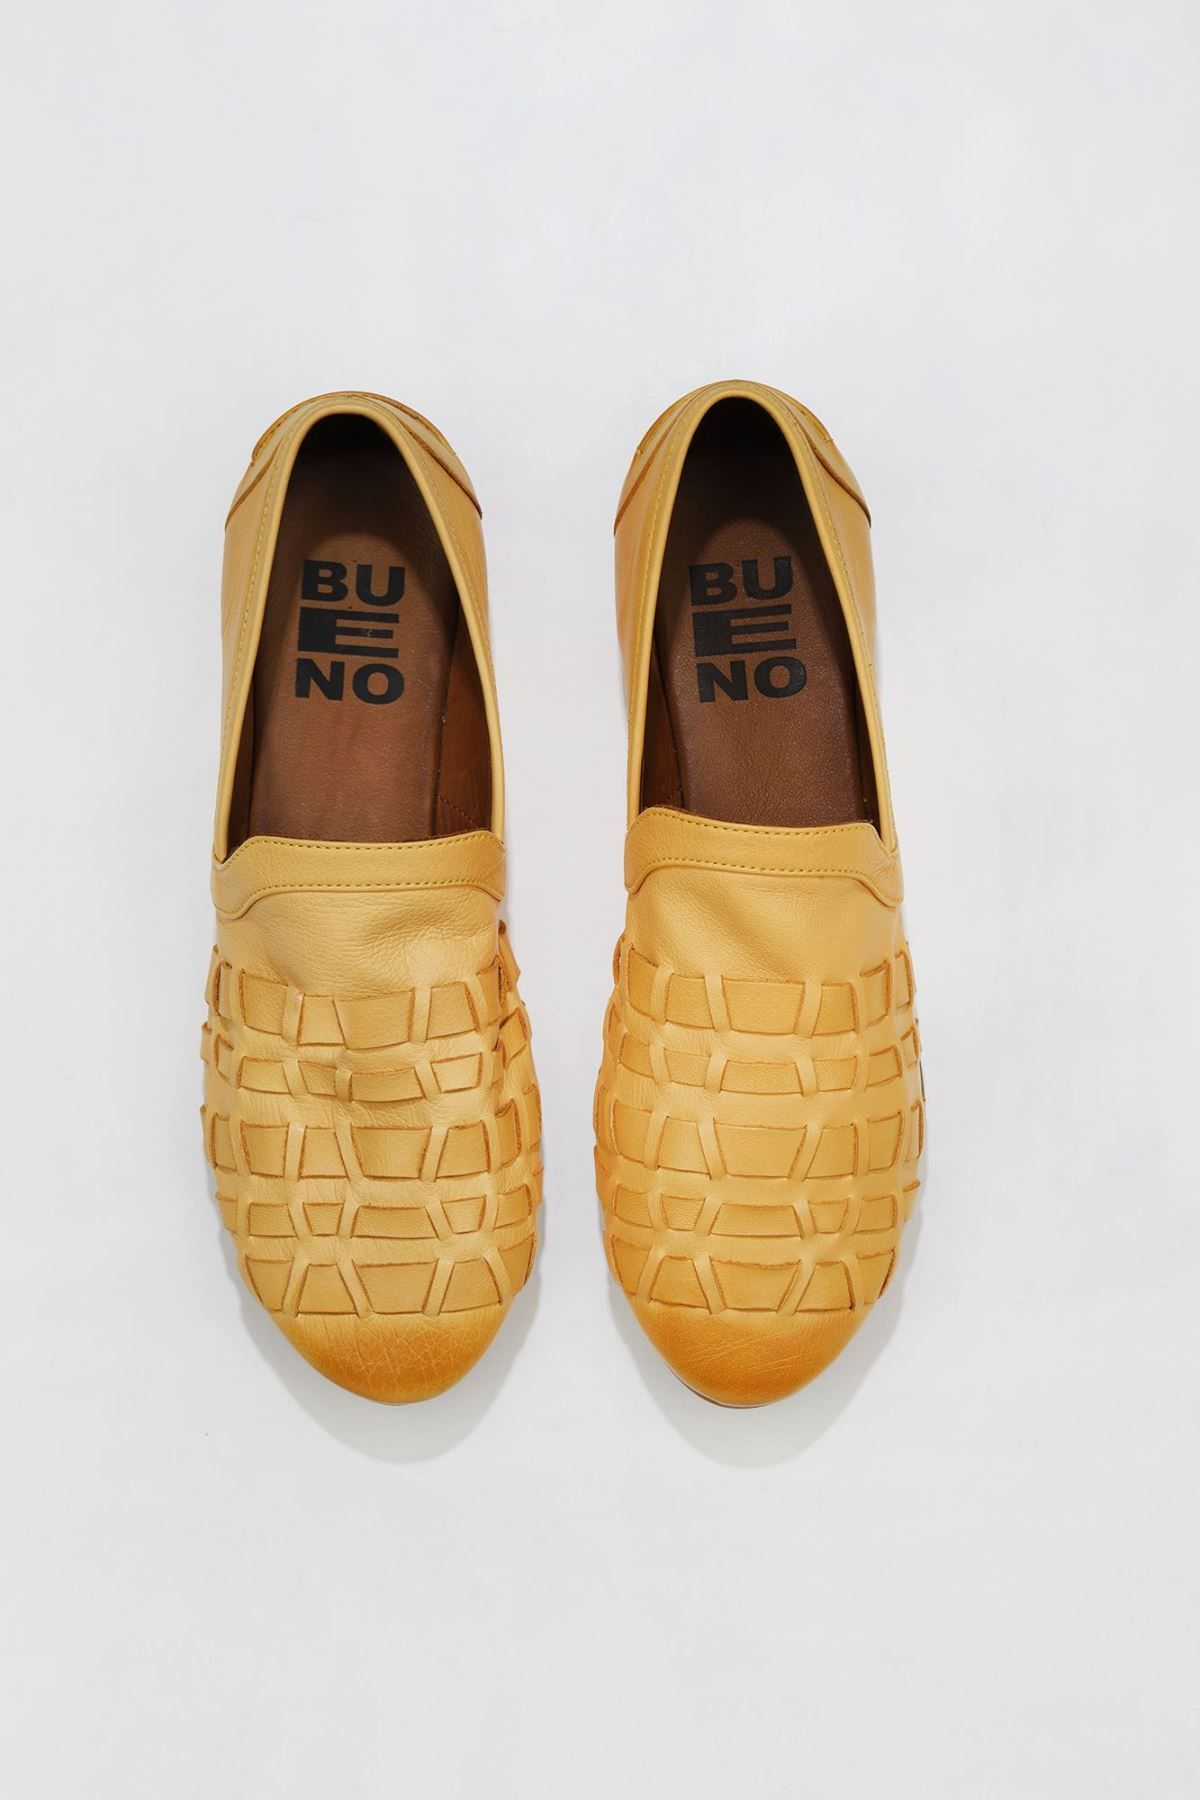 Bueno Shoes Sarı Deri Kadın Düz Babet